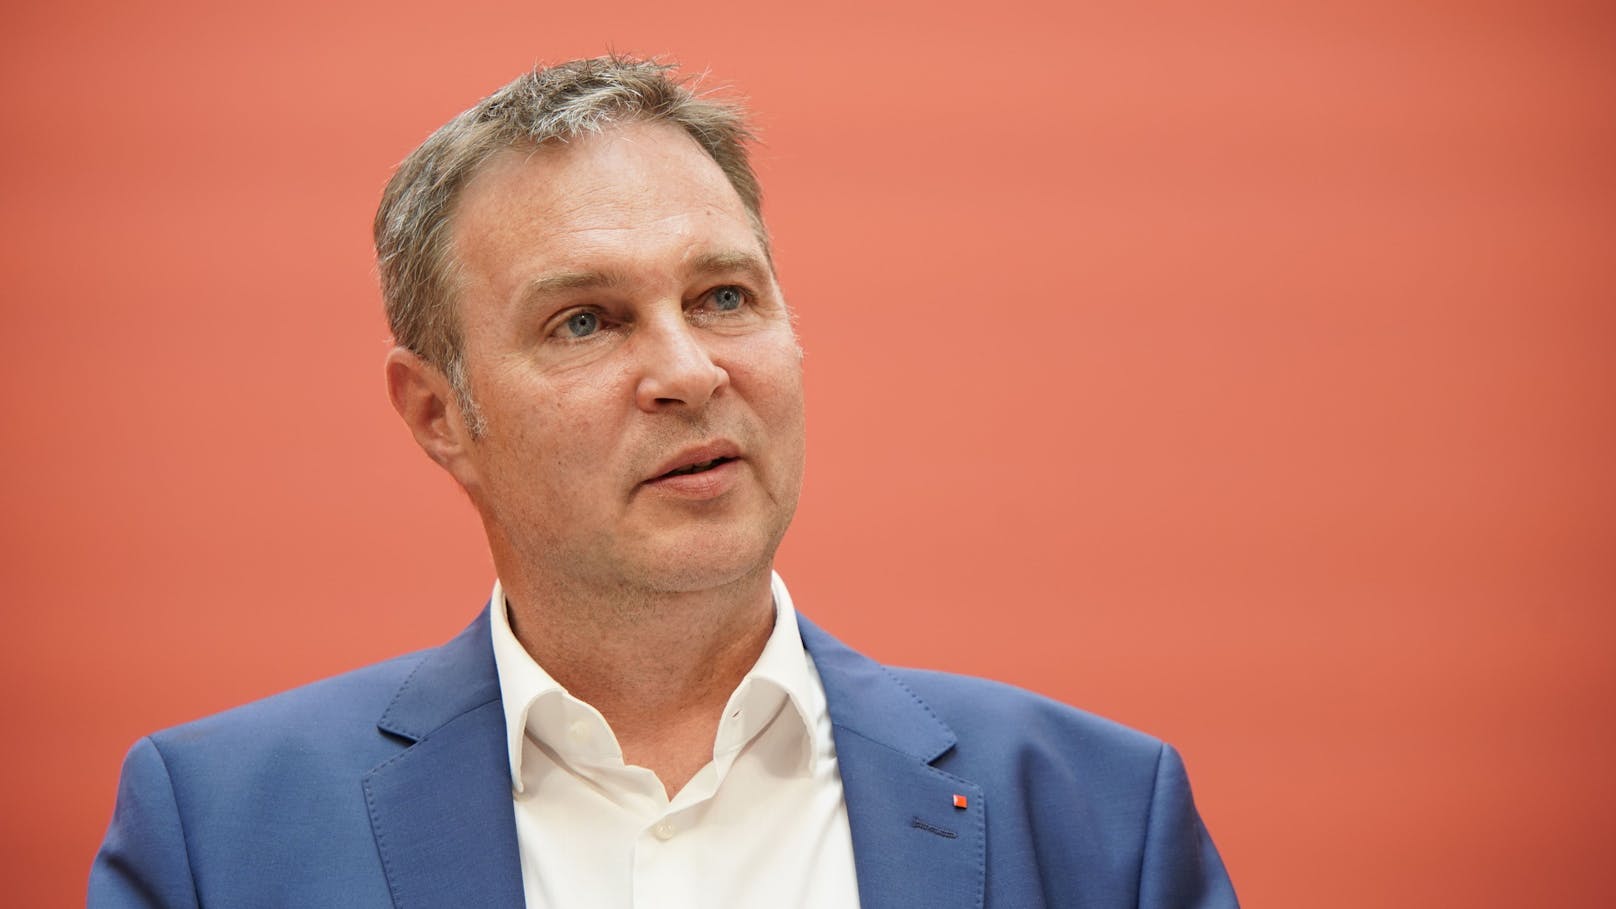 Andreas Babler ist seit wenigen Tagen der neue SPÖ-Chef und schon muss er jede Menge Kritik einstecken.